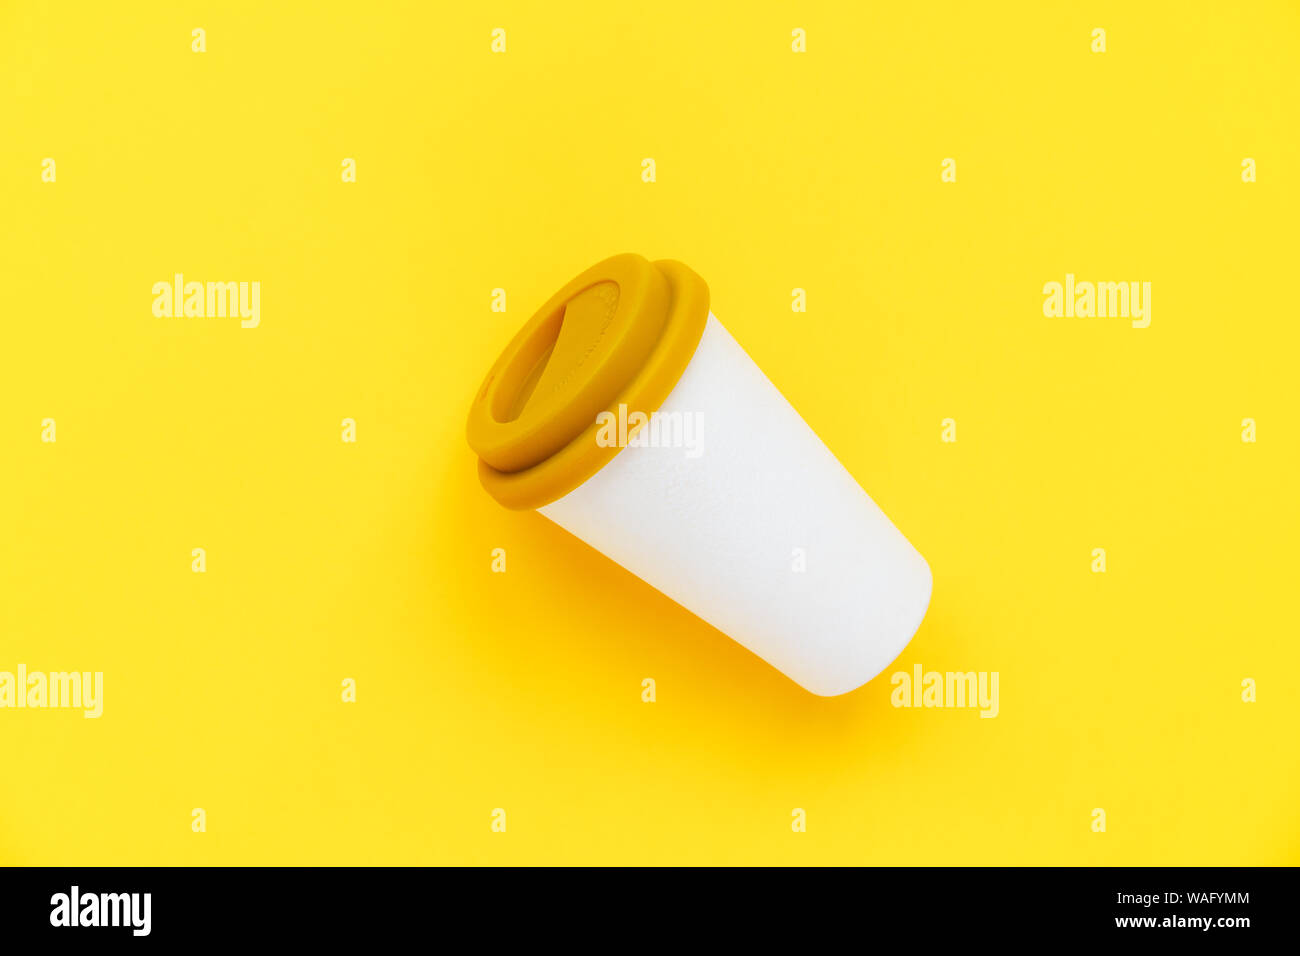 Weiß Bambus Kaffee Tasse mit einem gelben Gummi Deckel auf einem gelben Hintergrund zu gehen Stockfoto